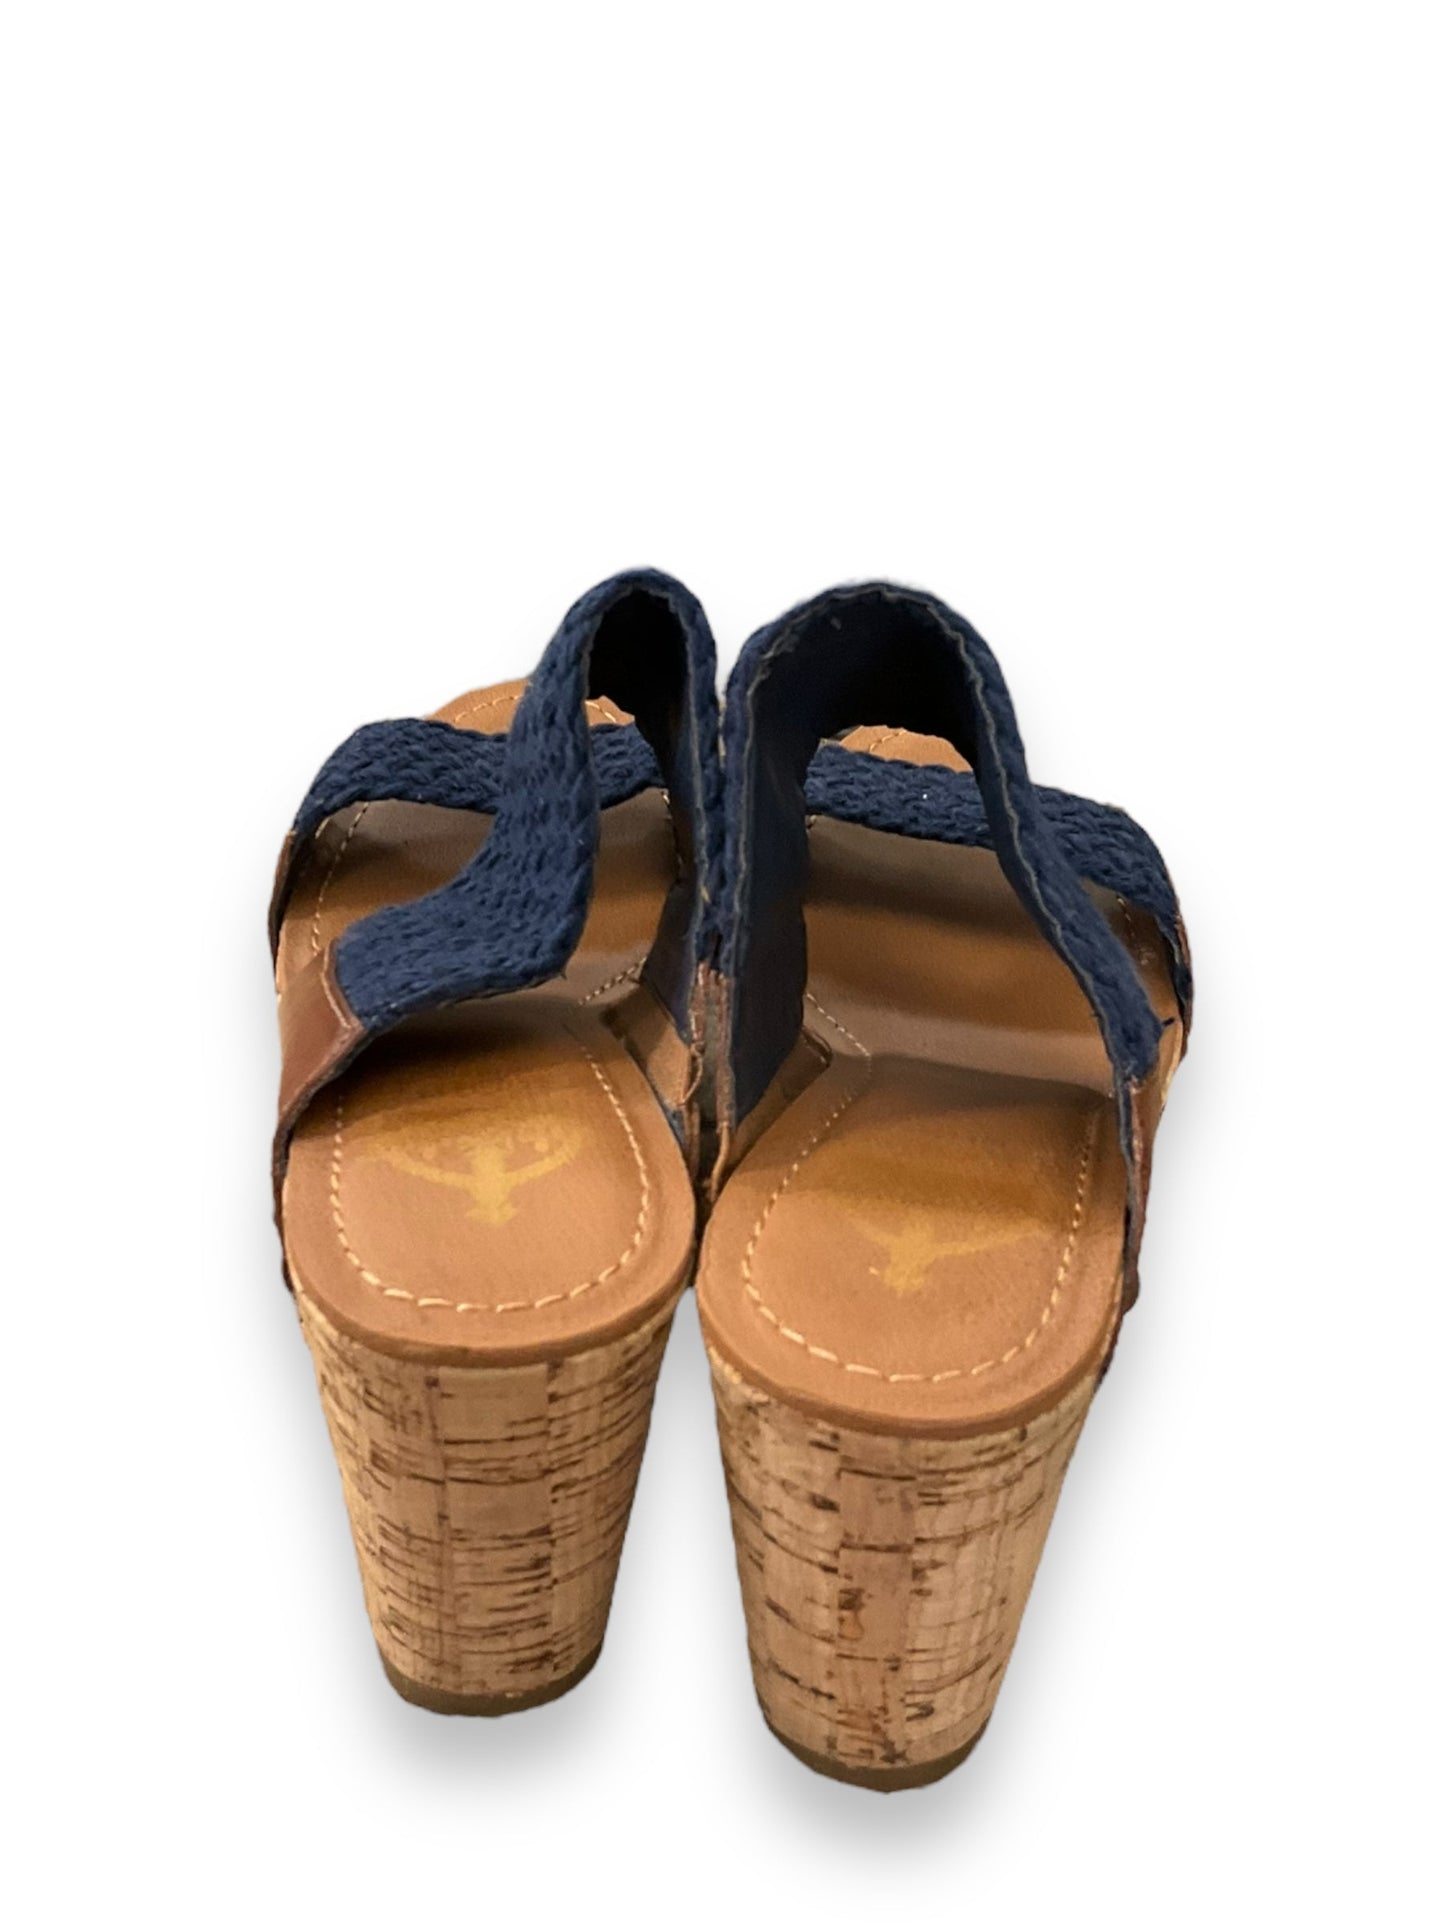 Blue & Brown Sandals Heels Wedge Crown Vintage, Size 6